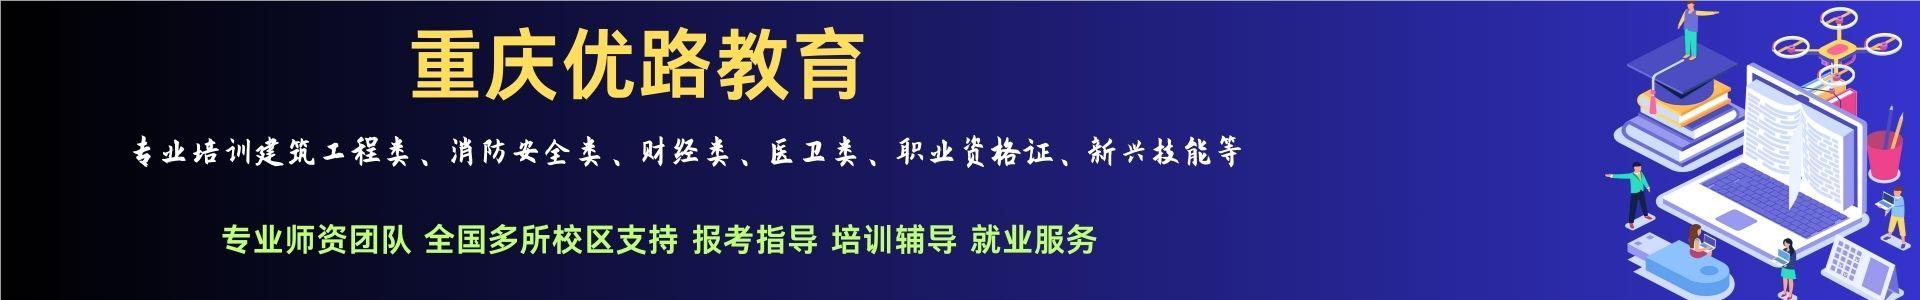 重庆优路消防监控证培训学校